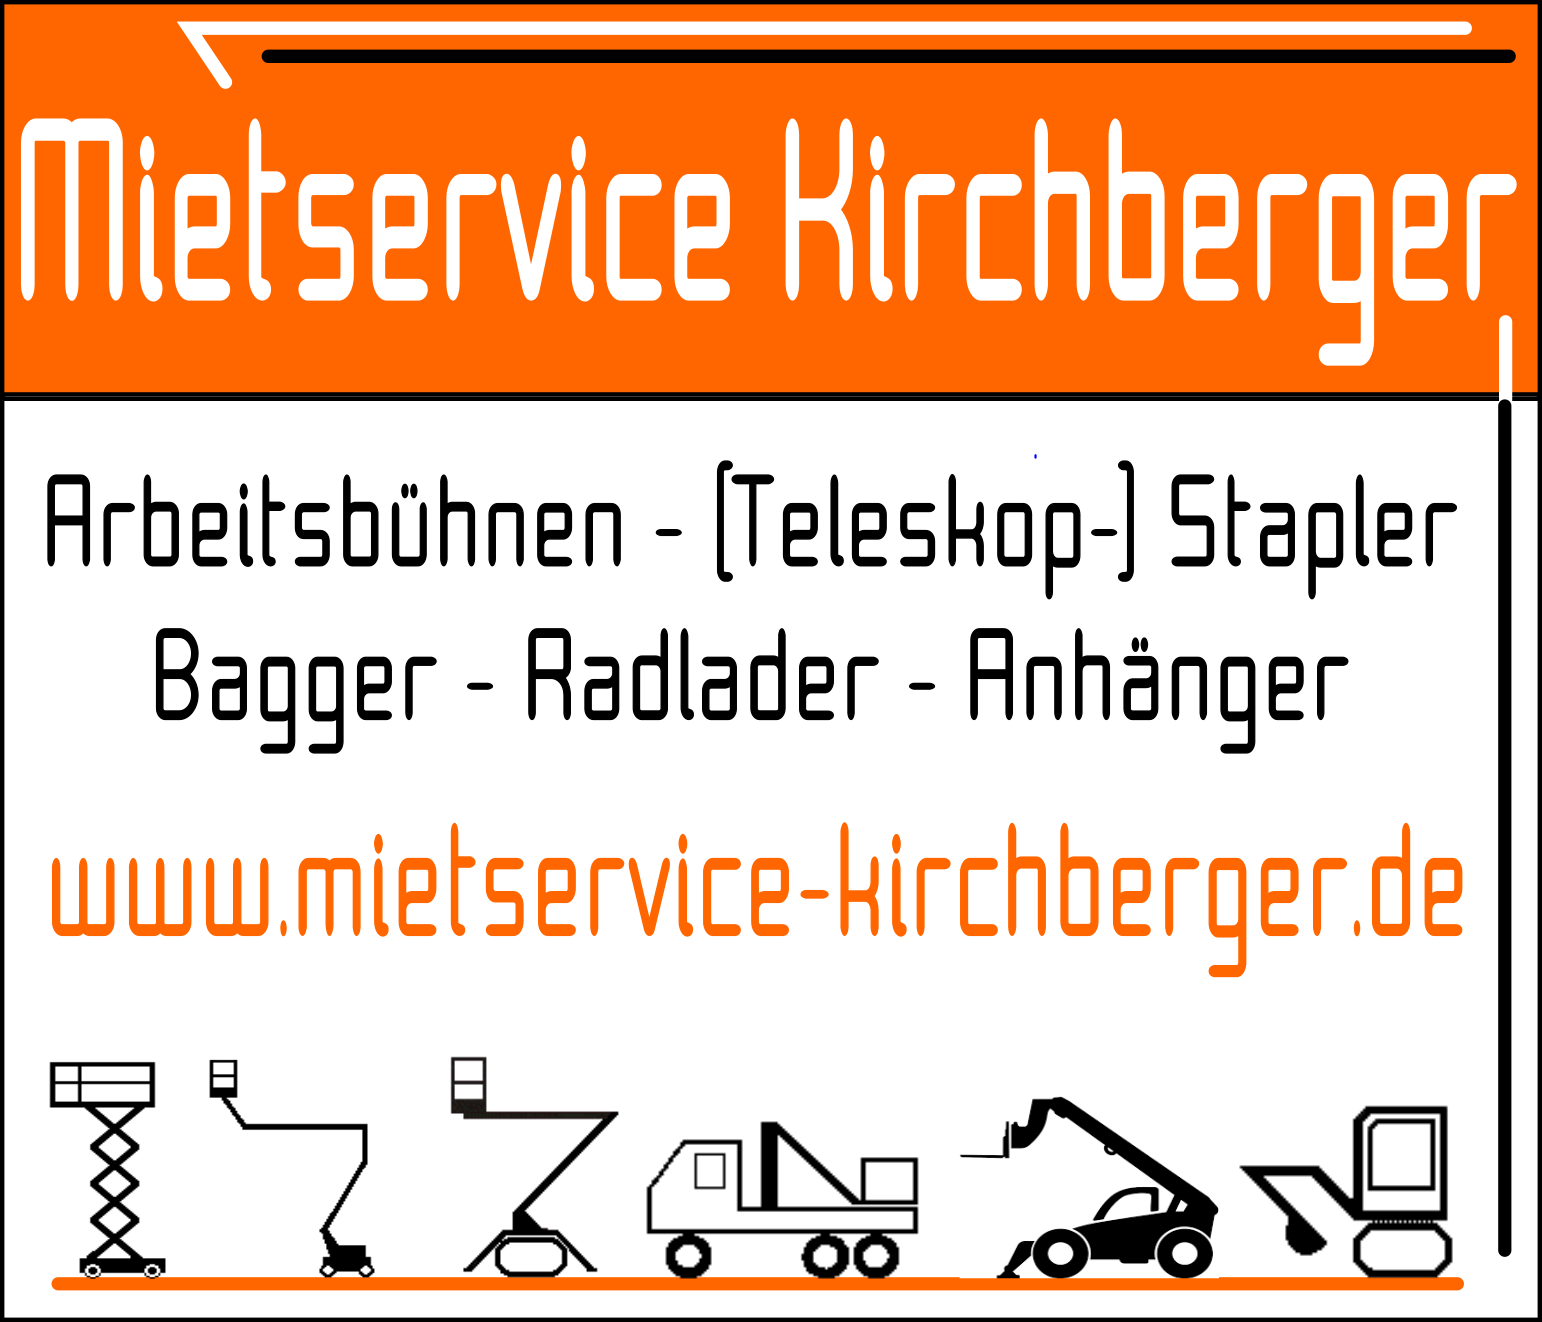 (c) Mietservice-kirchberger.de